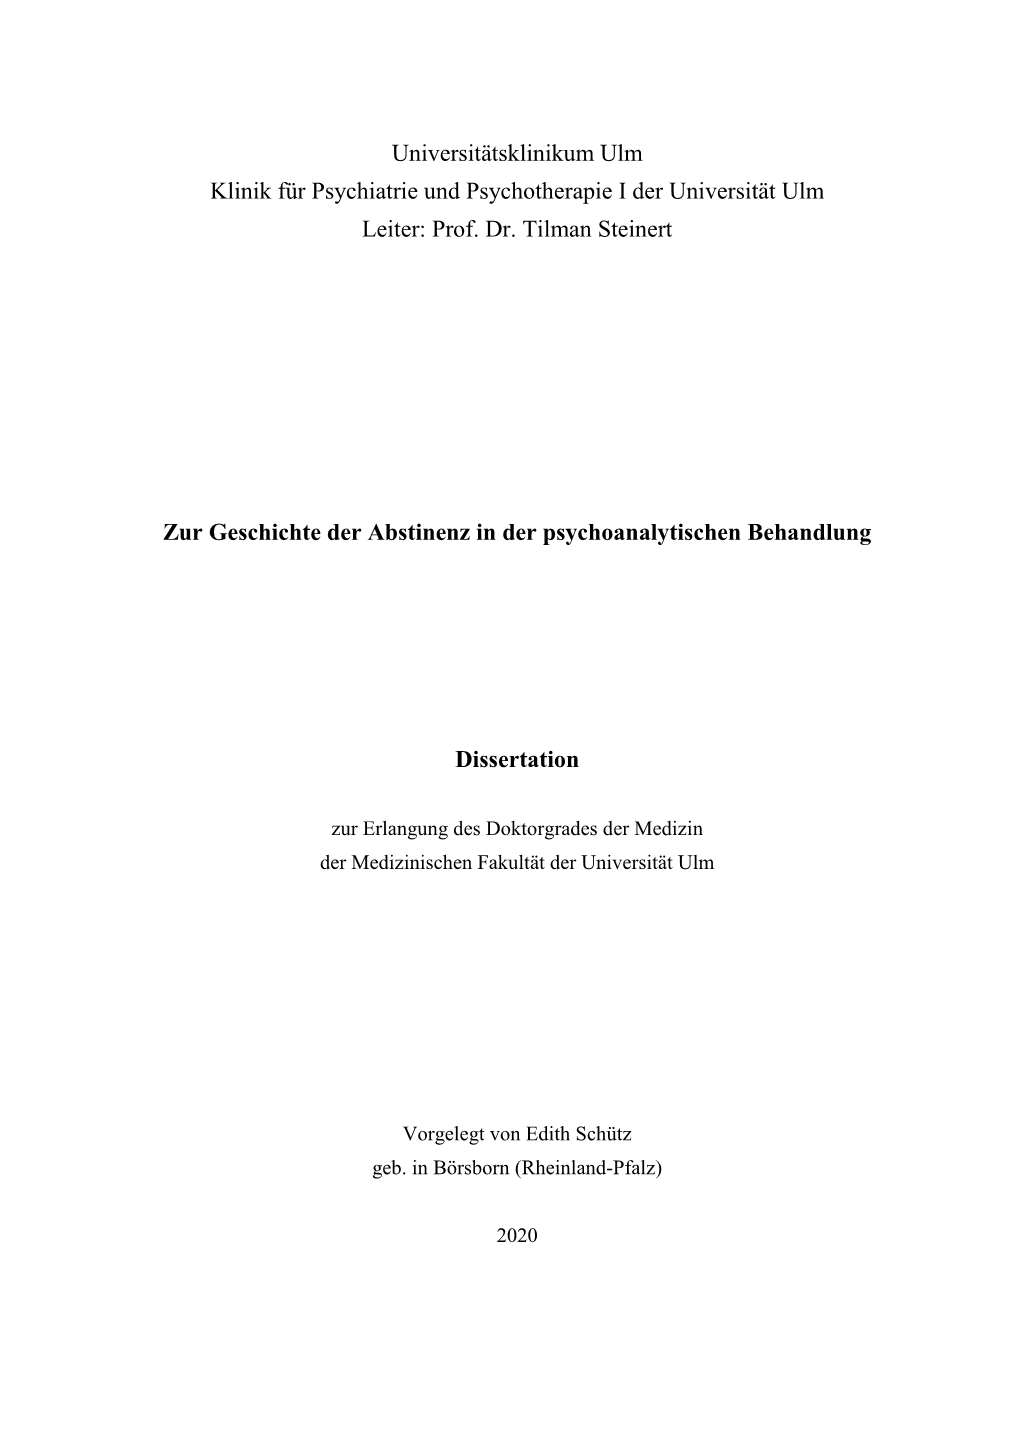 Dissertation Schuetz